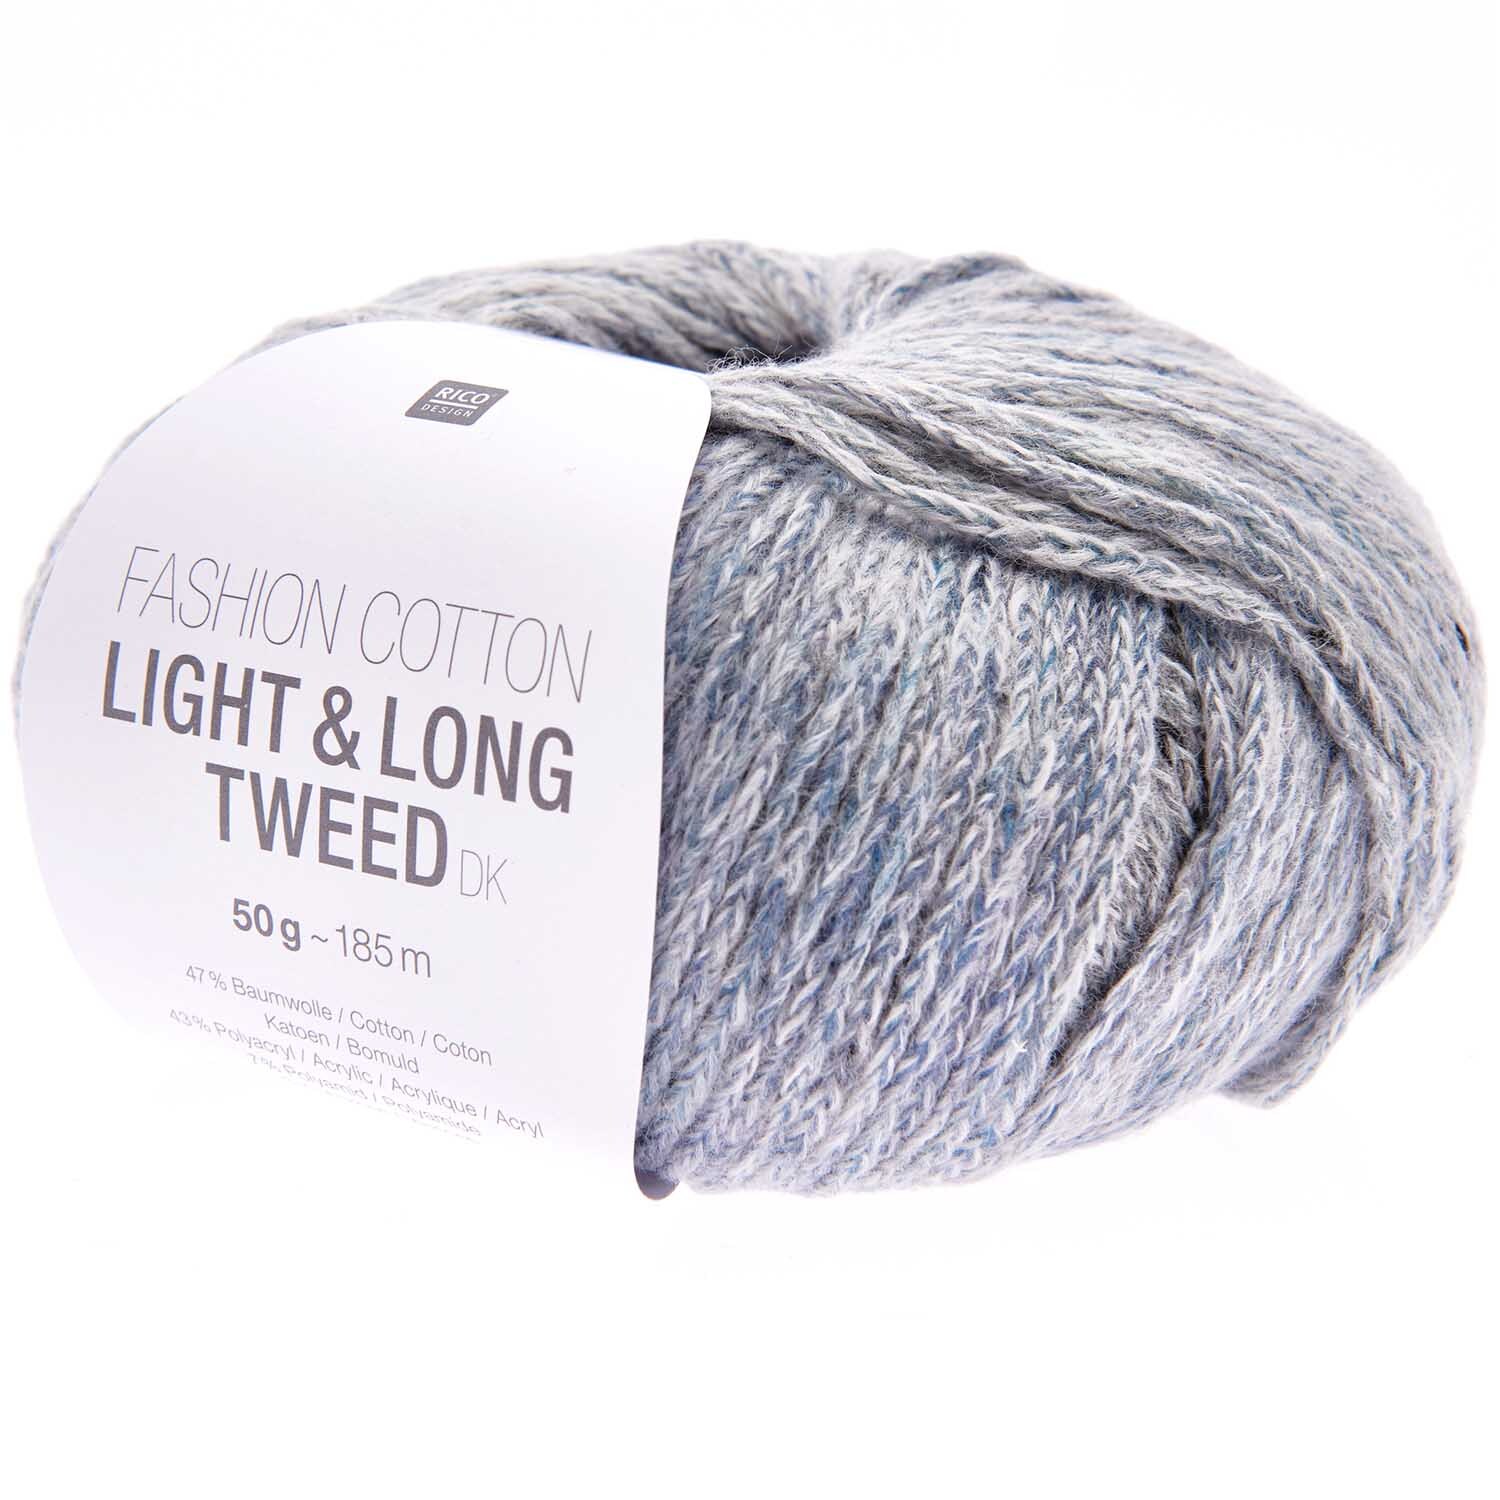 Fashion Cotton Light & Long Tweed dk